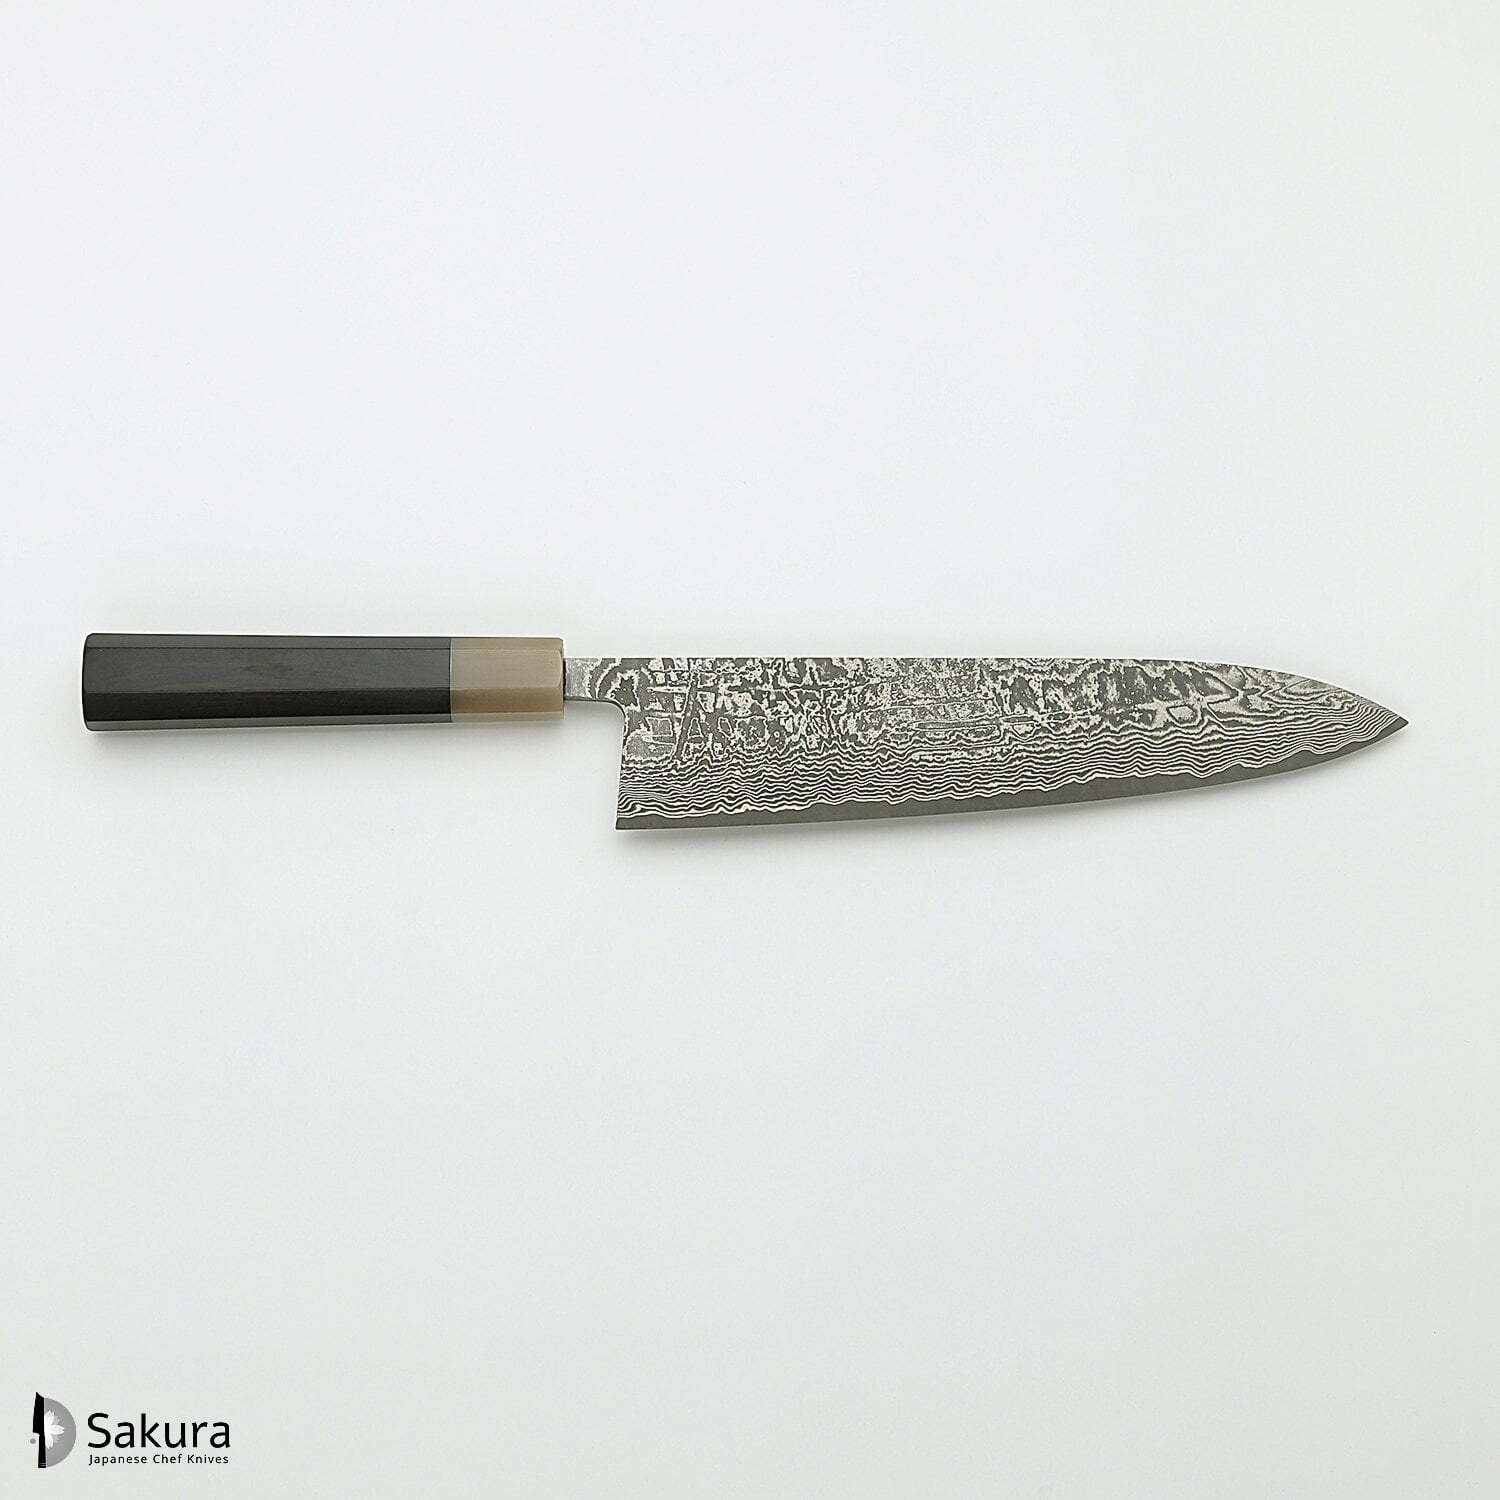 סכין שף רב-תכליתית גִּיוּטוֹ 240מ״מ מחושלת בעבודת יד 3 שכבות: פלדת פחמן יפנית מתקדמת מסוג R2/SG2 עטופה פלדת דמשק אל-חלד גימור דמשק שירו קאמו יפן